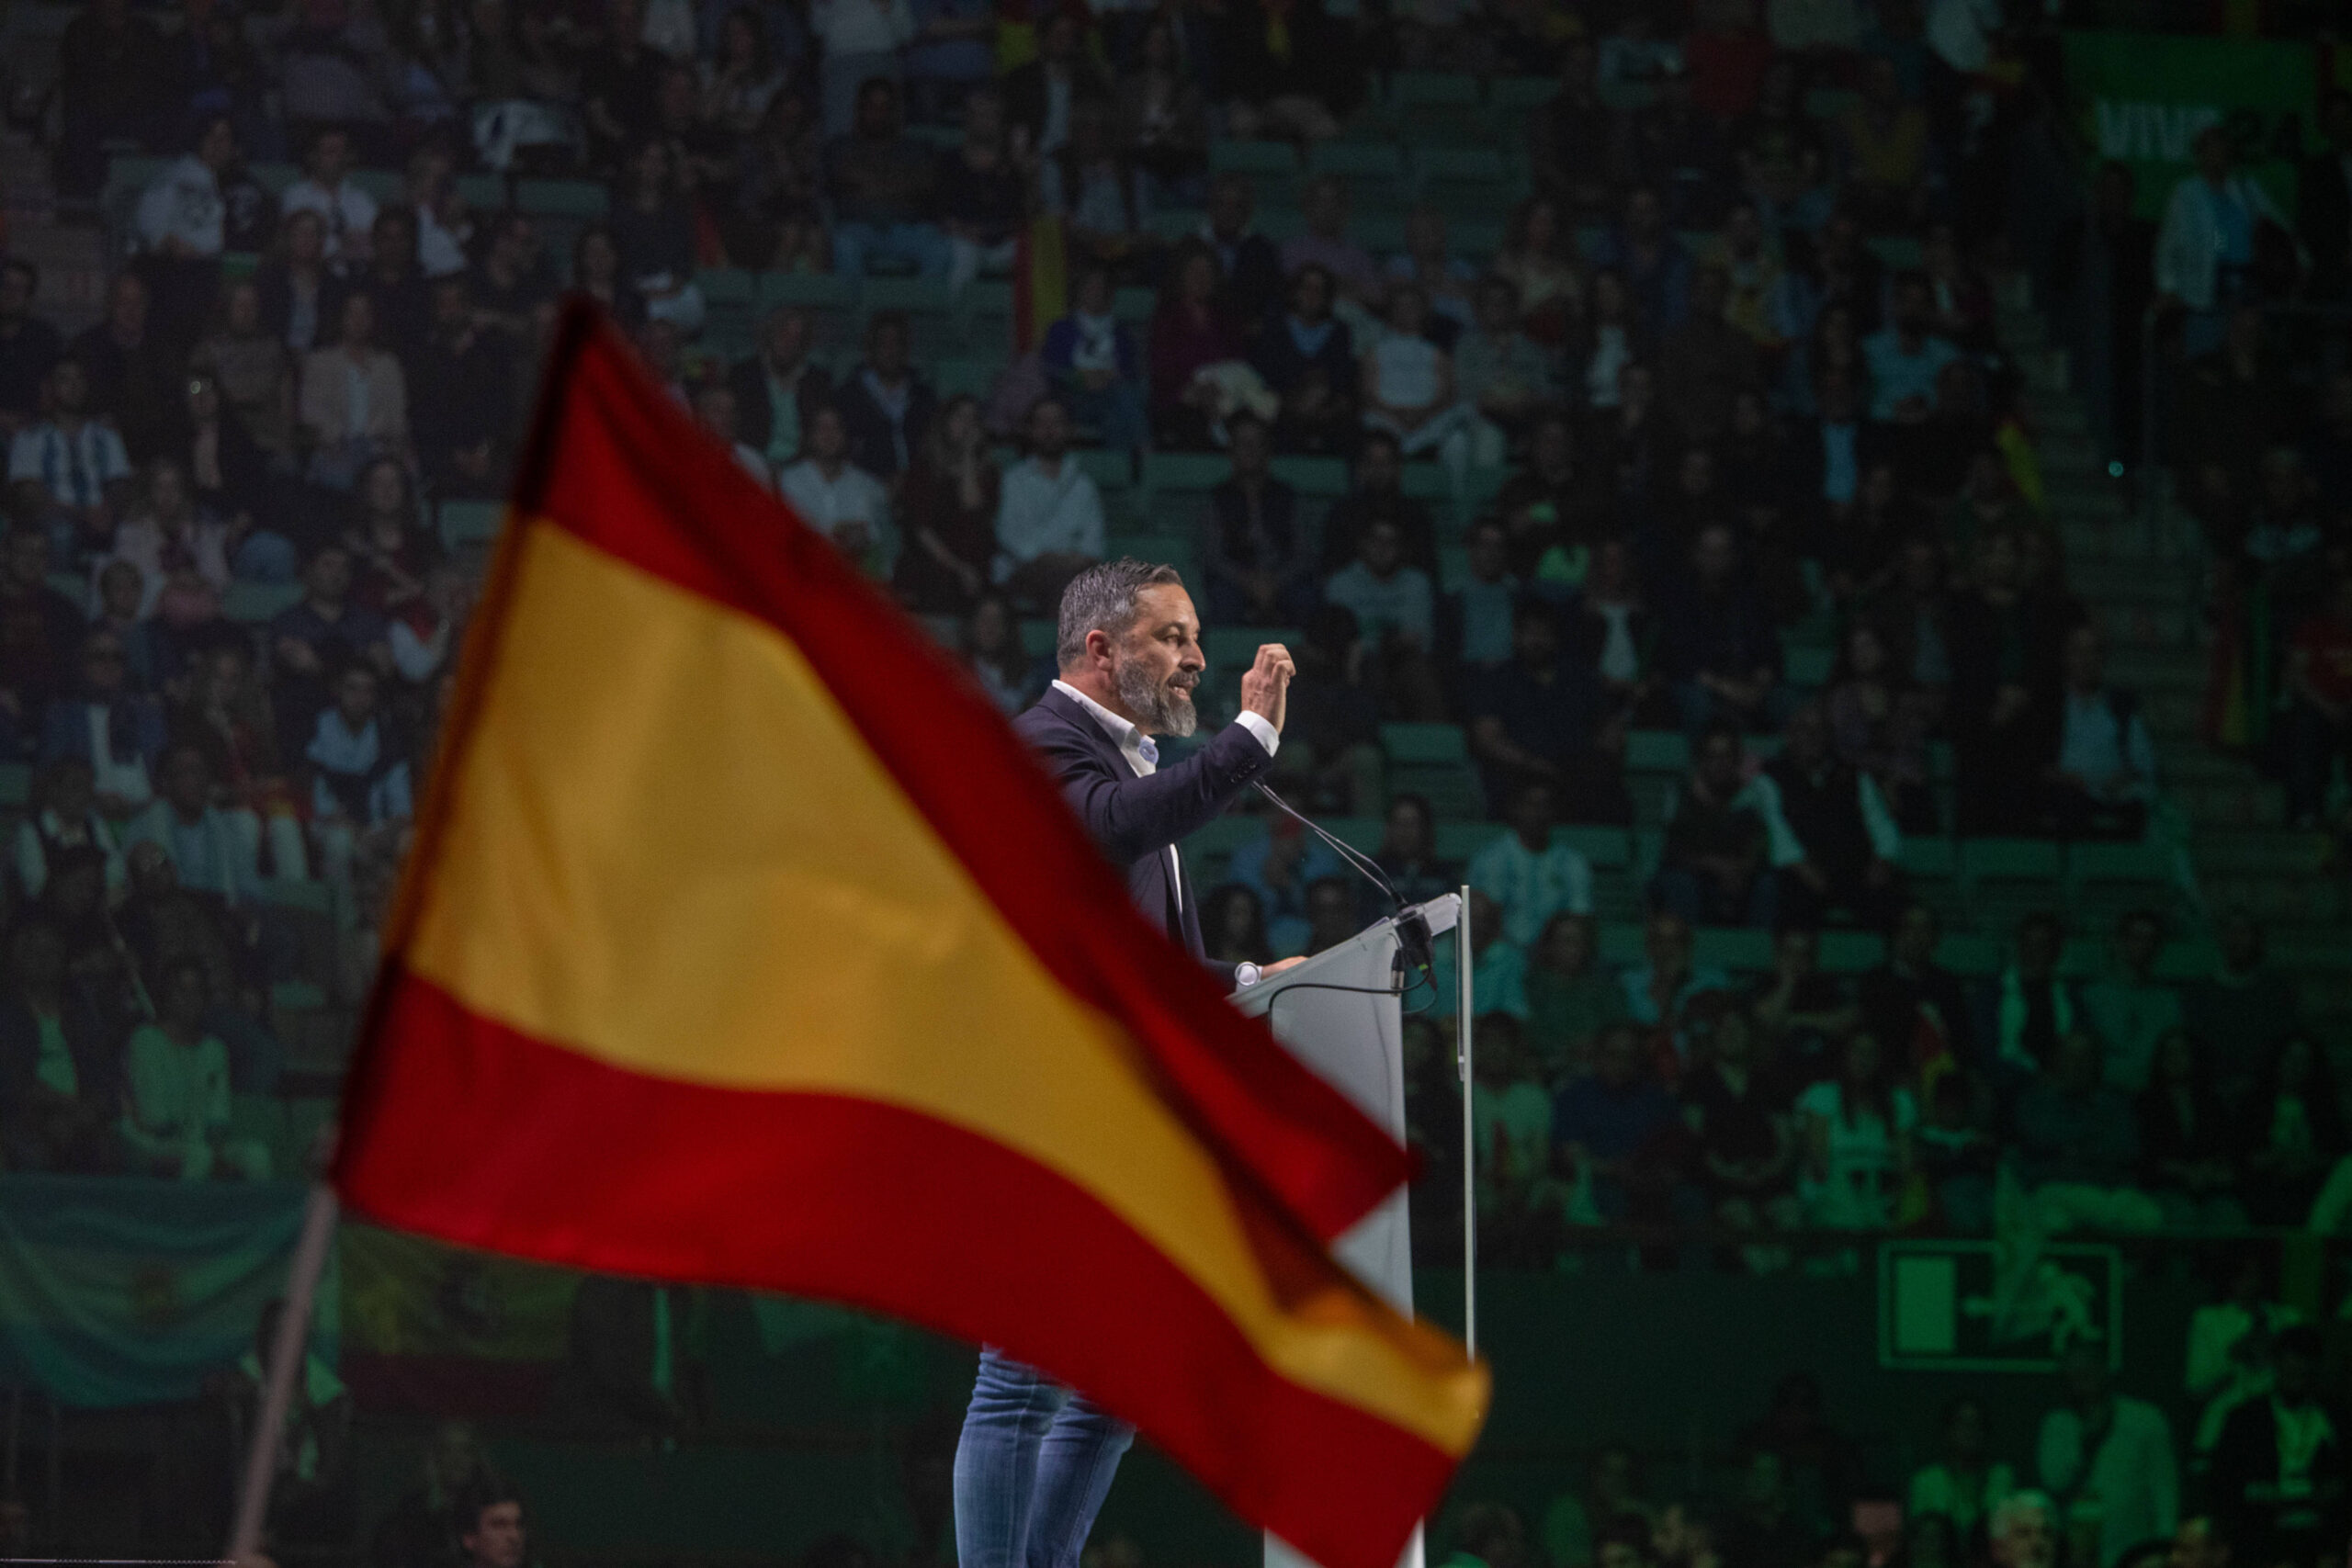 Santiago Abascal, leader du parti politique espagnol de droite Vox, s'exprime lors de la convention politique Europa Viva 24 organisée par le parti espagnol d'extrême droite VOX au Palacio de Vistalegre à Madrid. © Alberto Gardin/SOPA